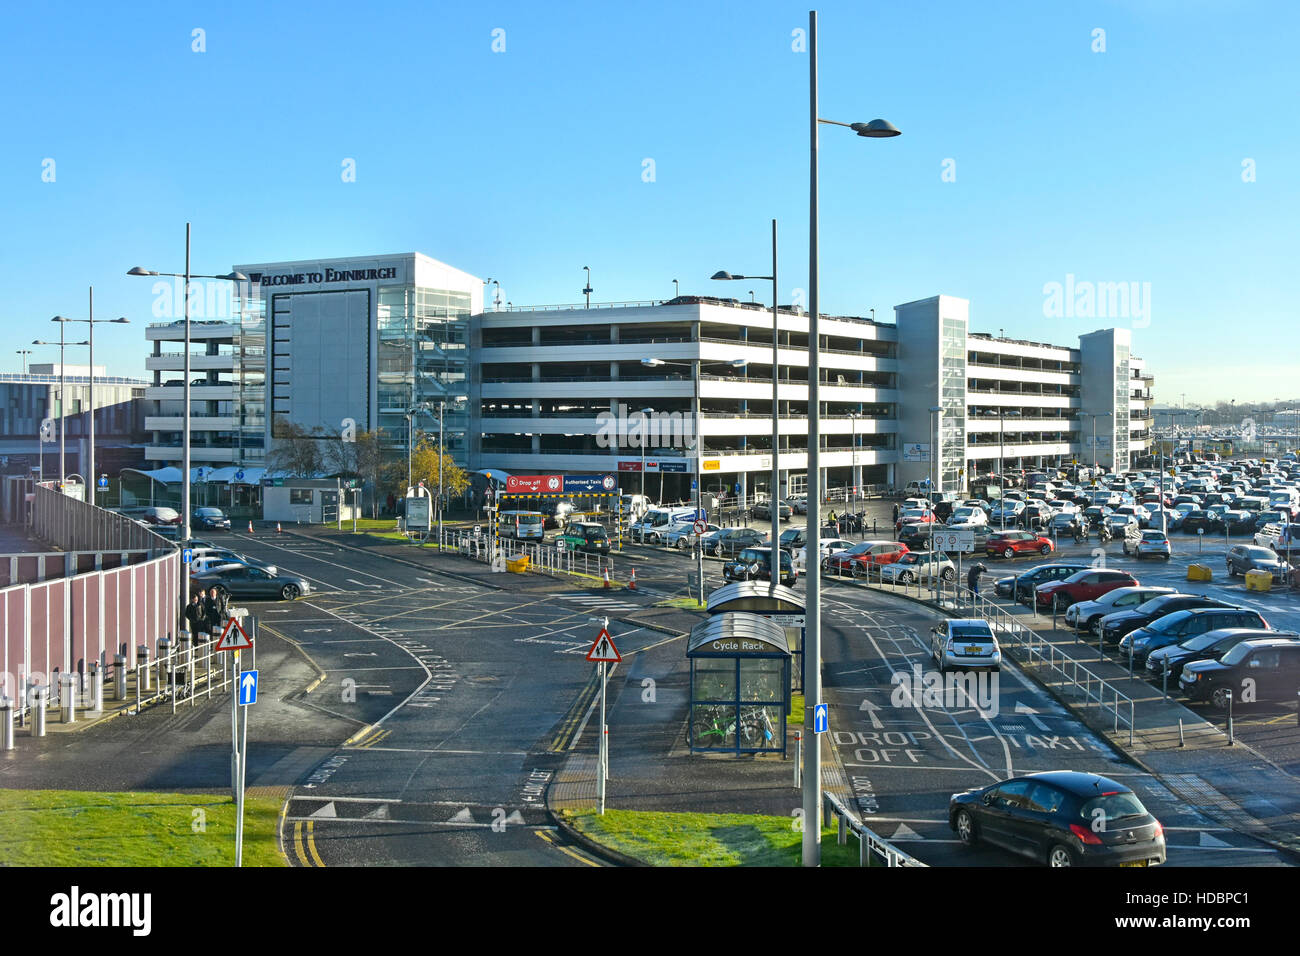 Routes d'accès au parking à plusieurs étages et parking extérieur animé aux installations aéronautiques écossaises aéroport d'Édimbourg Ingliston Écosse royaume-uni Banque D'Images